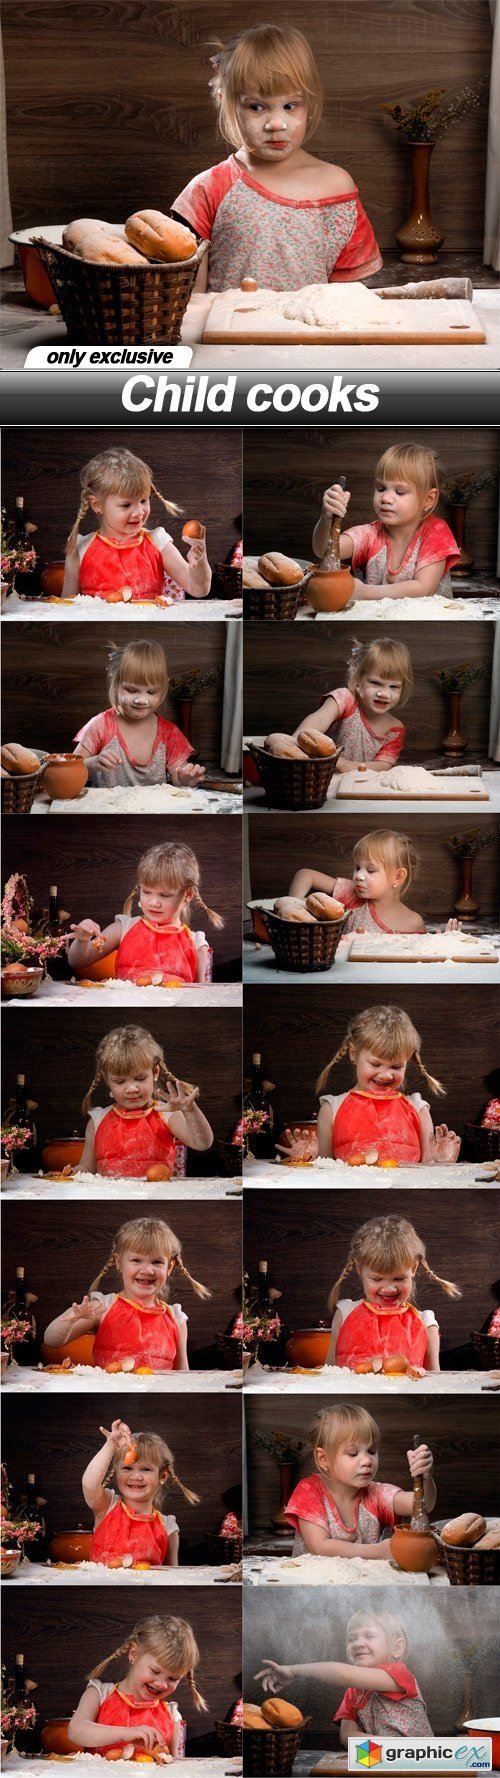 Child cooks - 15 UHQ JPEG